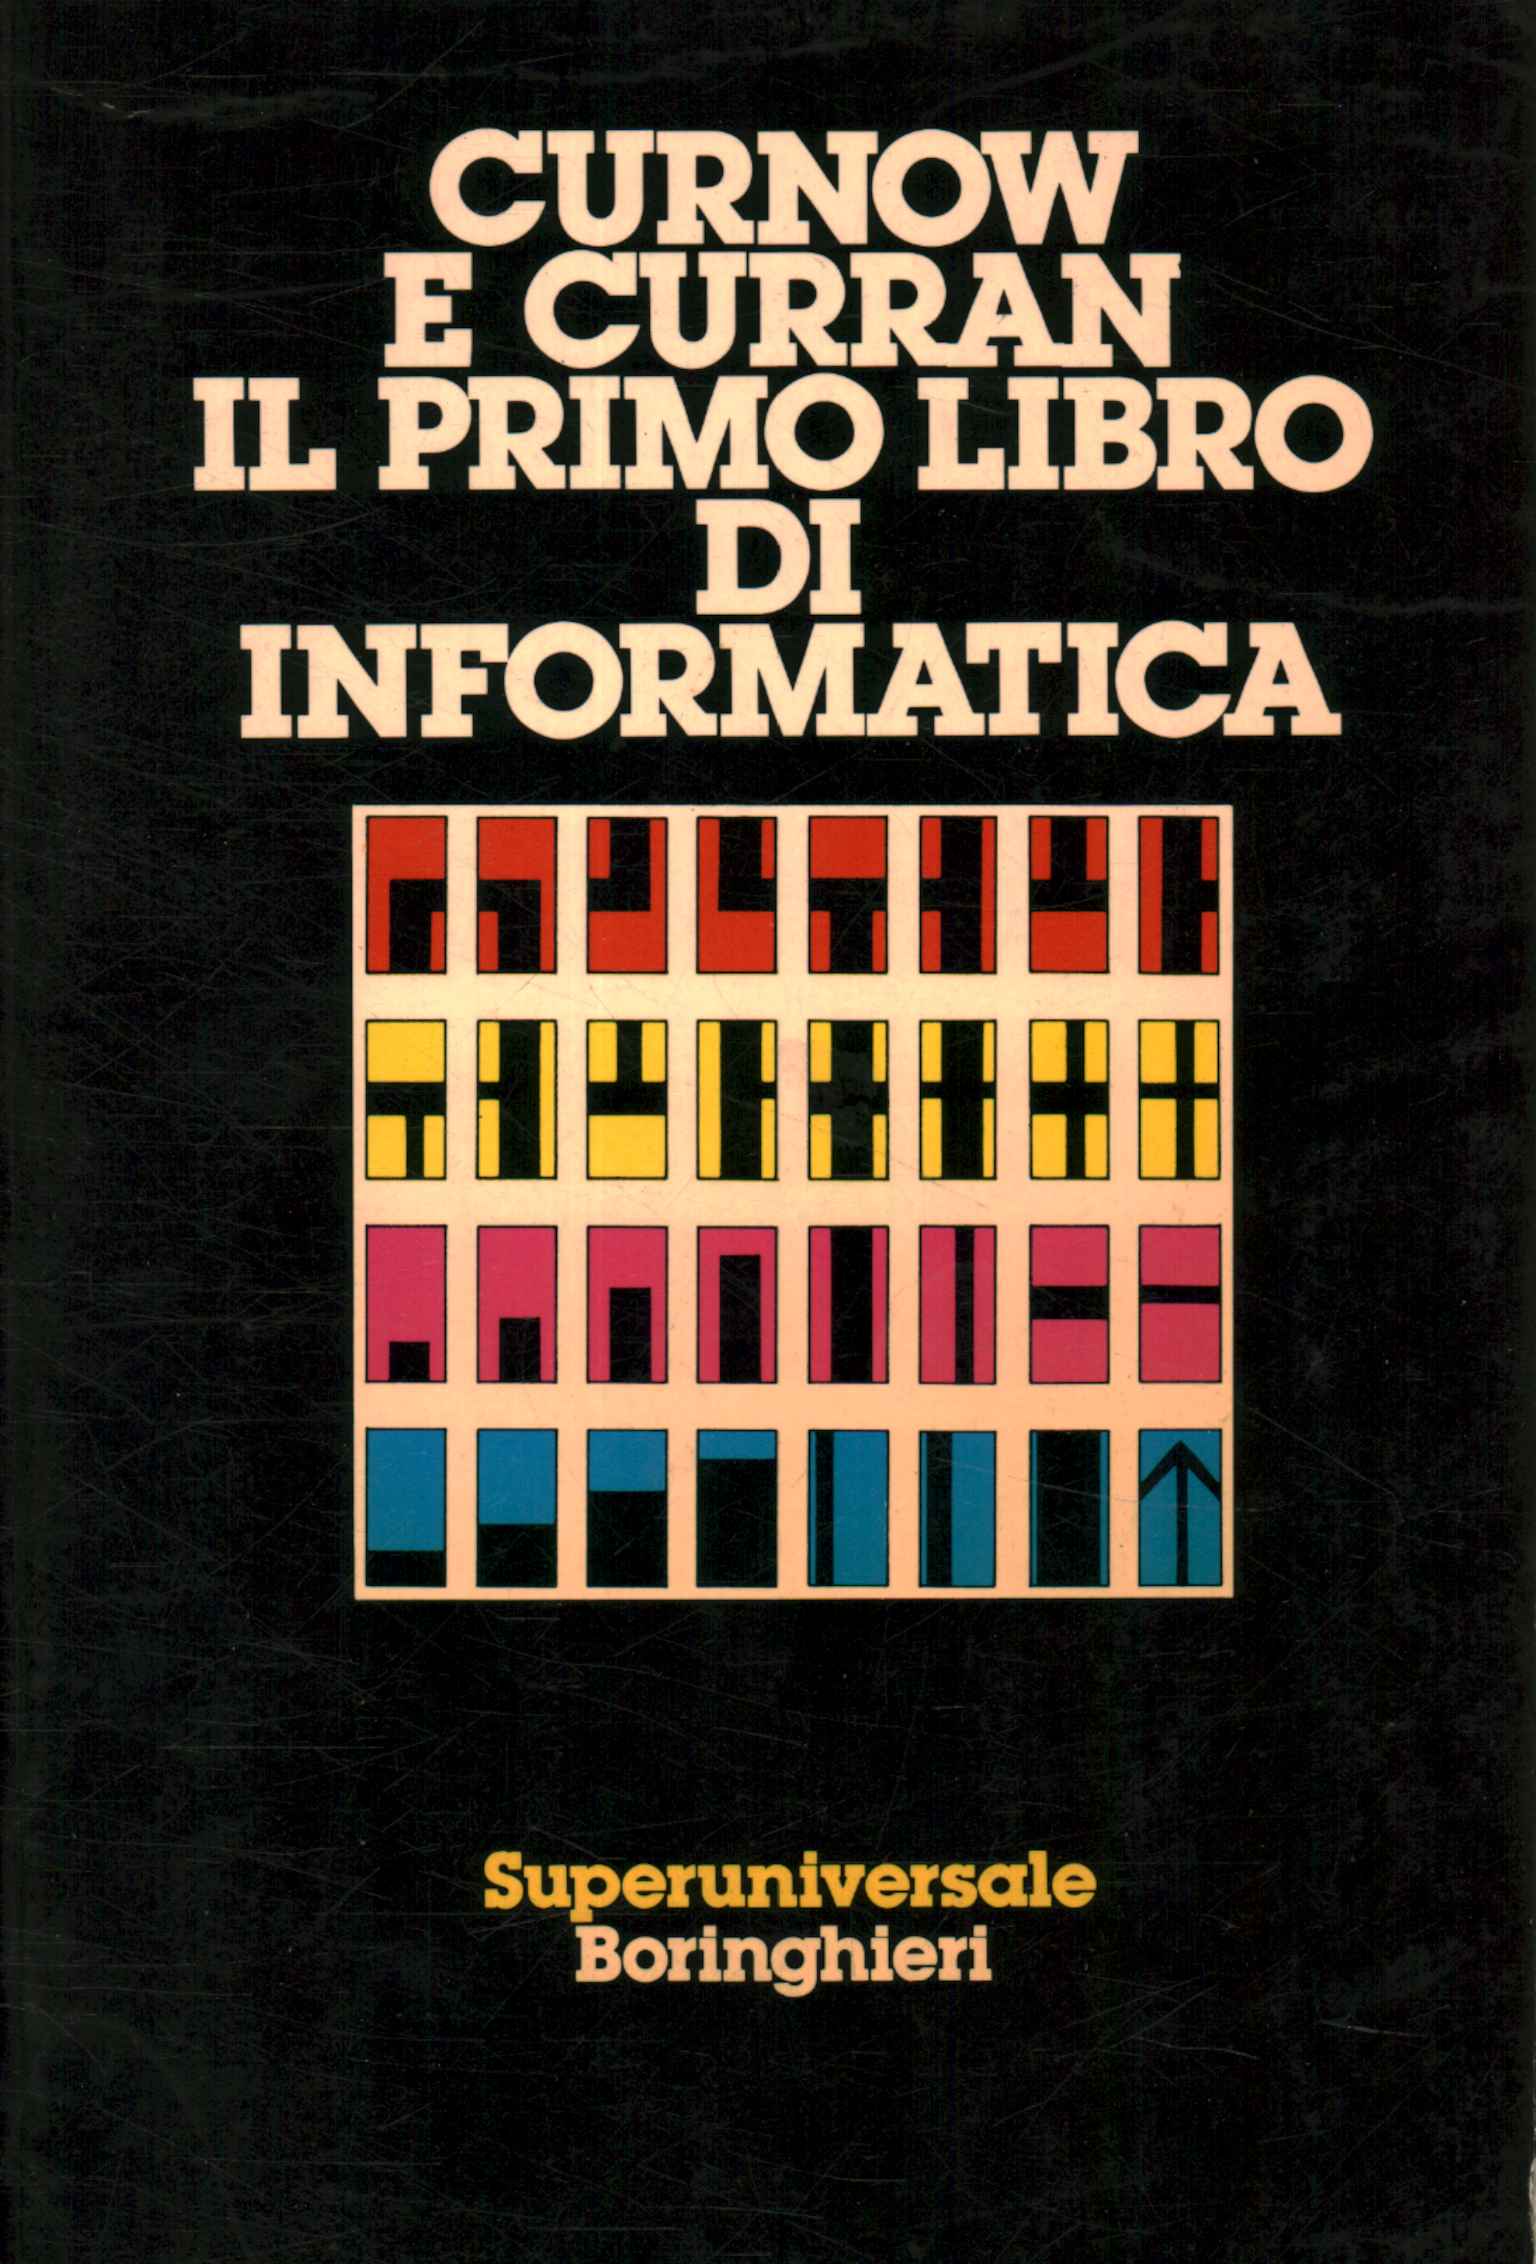 Das erste Computerbuch